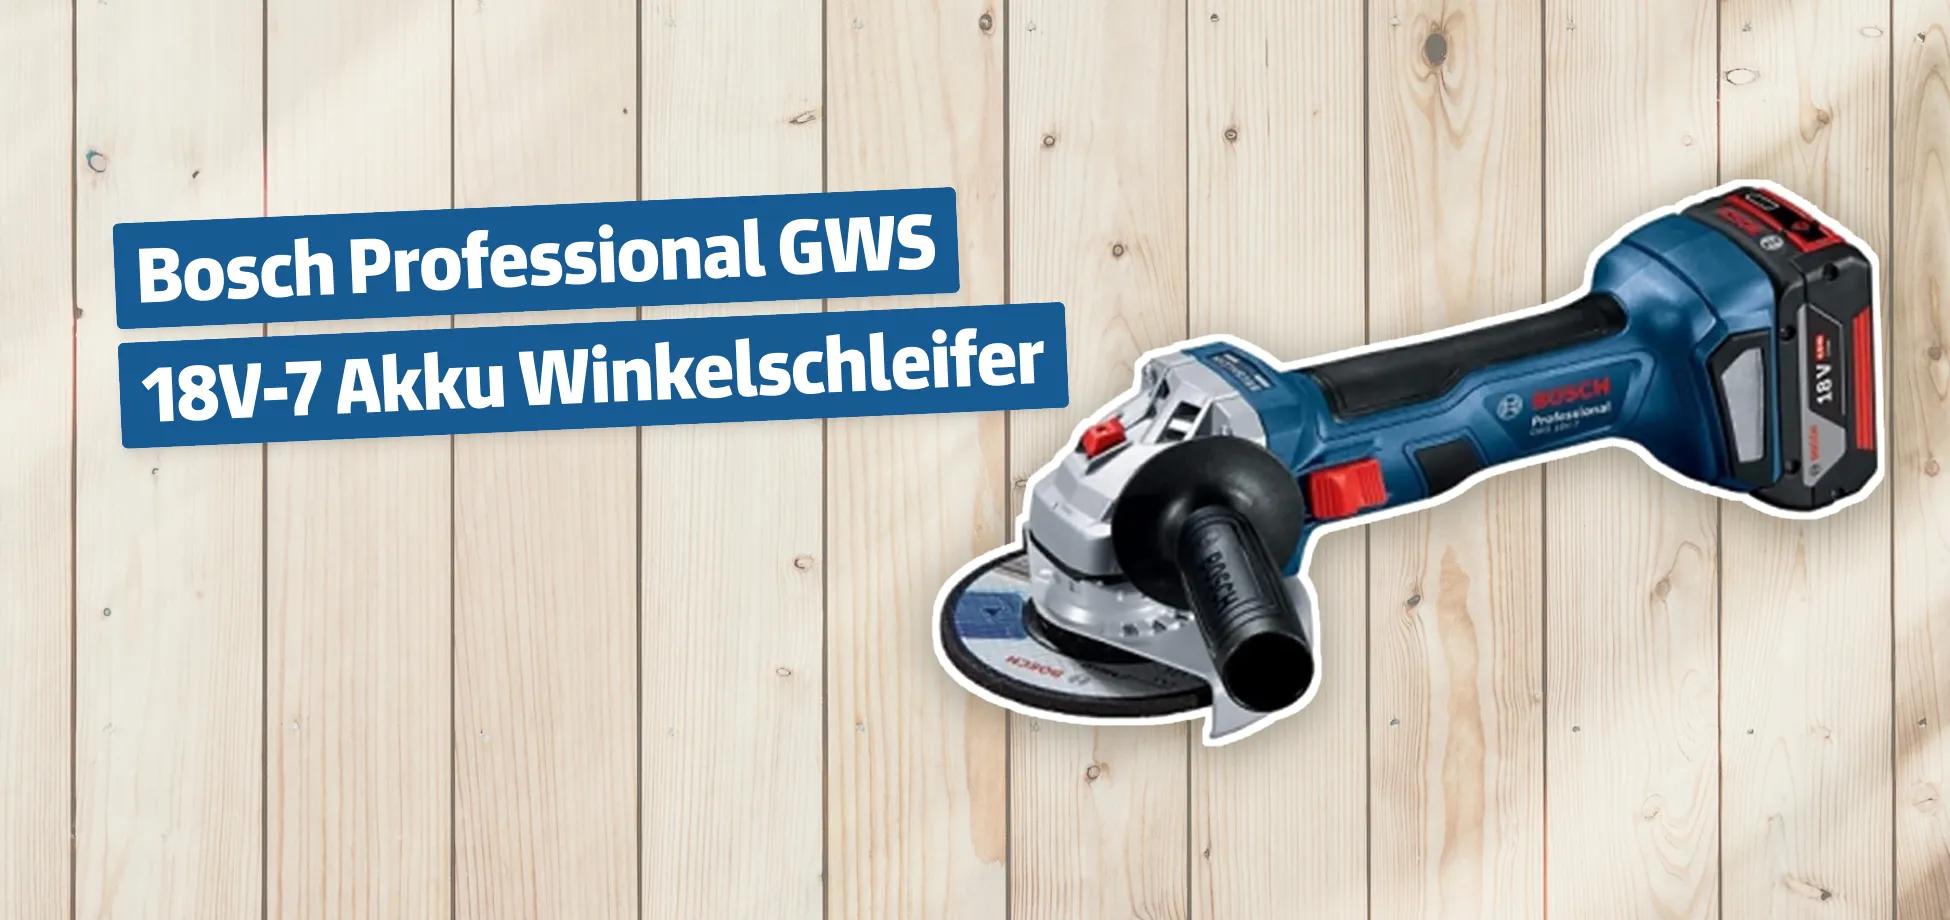 Bosch Professional GWS 18V-7 Akku Winkelschleifer